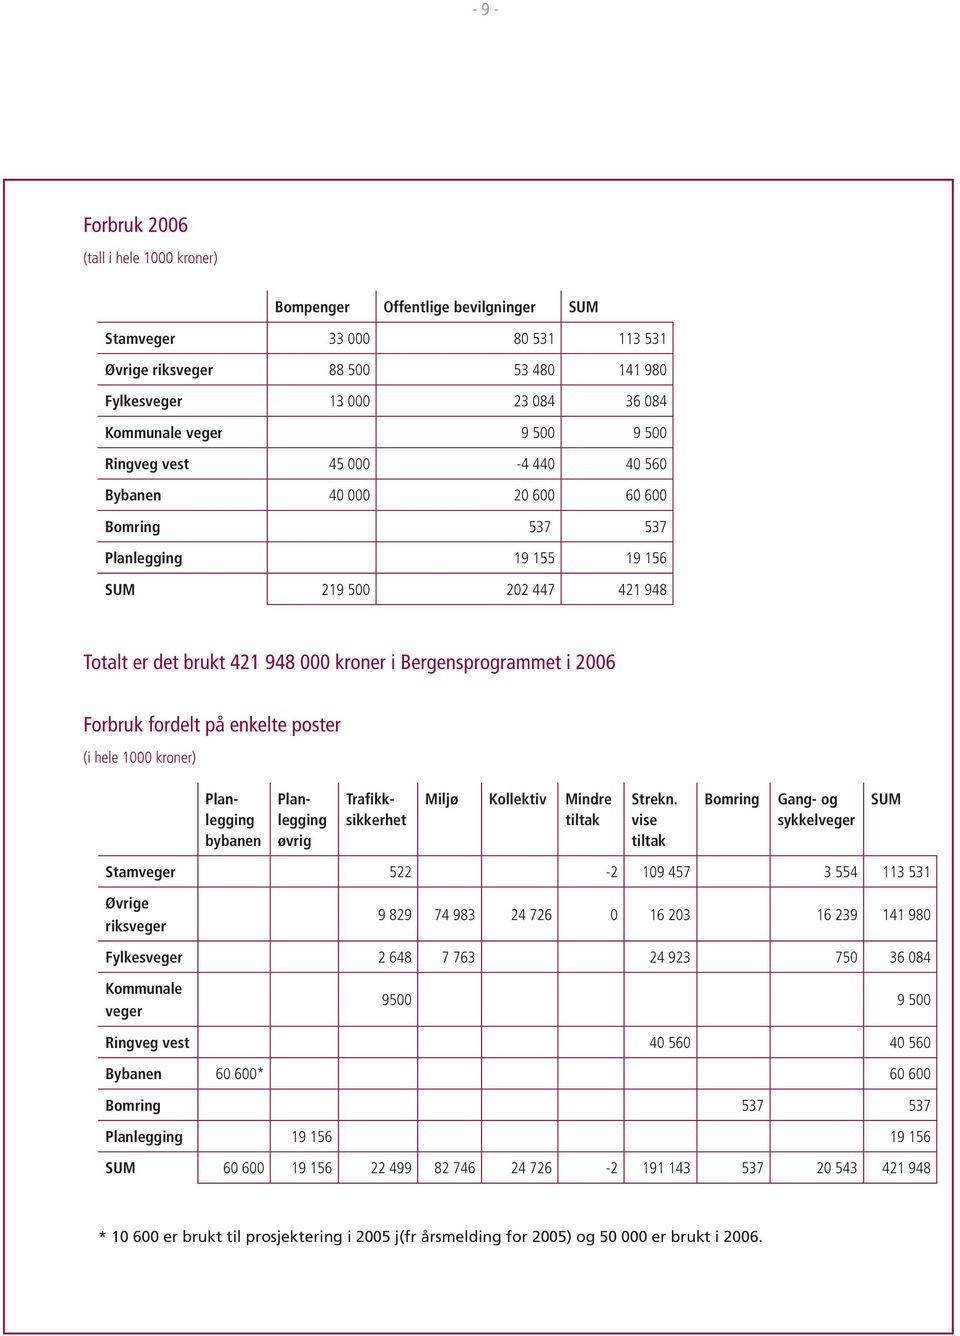 Bergensprogrammet i 2006 Forbruk fordelt på enkelte poster (i hele 1000 kroner) Planlegging bybanen Planlegging øvrig Trafikksikkerhet Miljø Kollektiv Mindre tiltak Strekn.